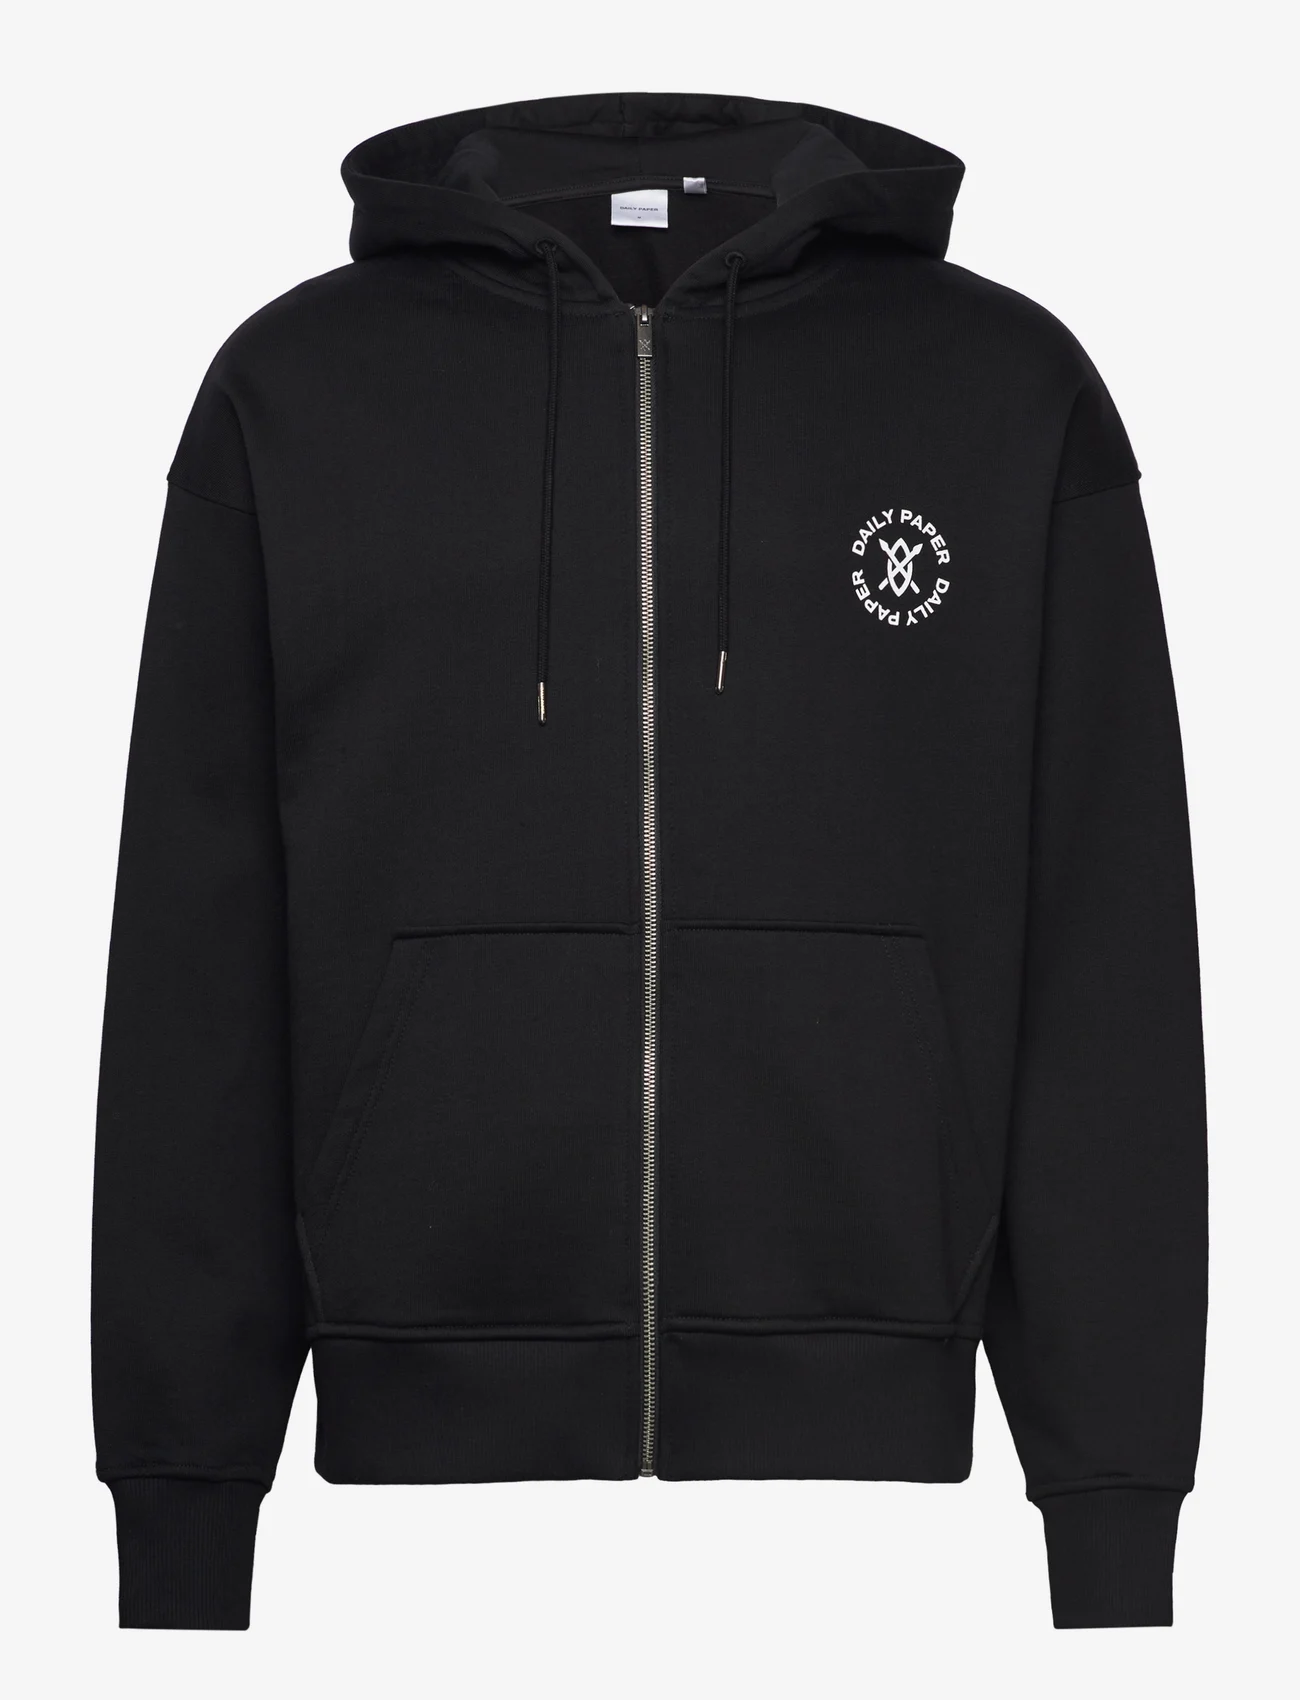 Daily Paper - ezar zip hoodie - hættetrøjer - black - 0